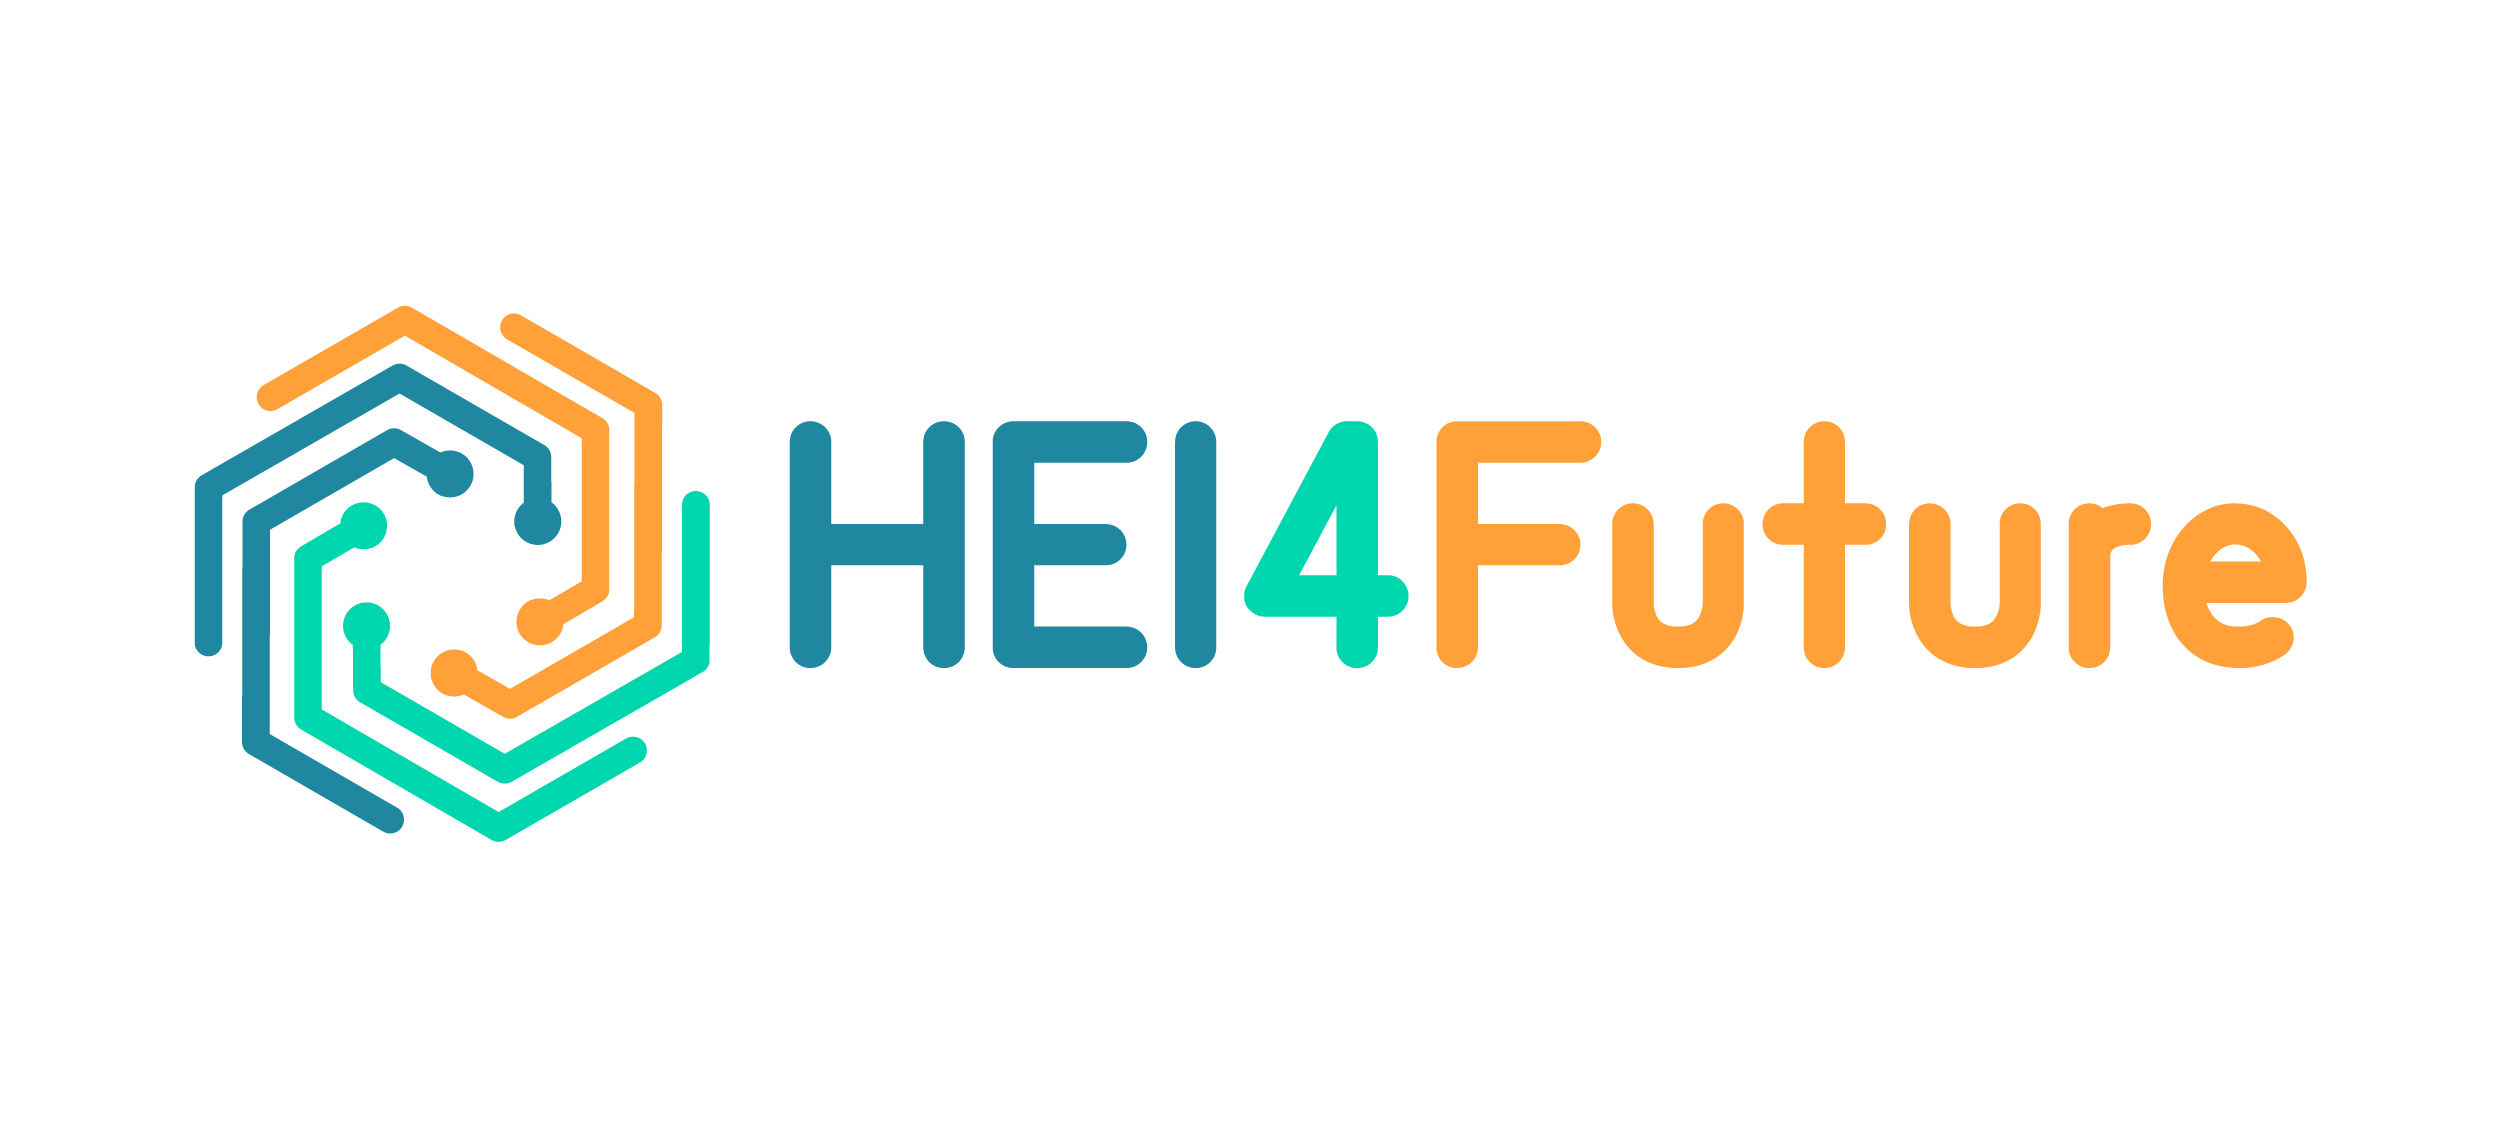 logo-hei4future